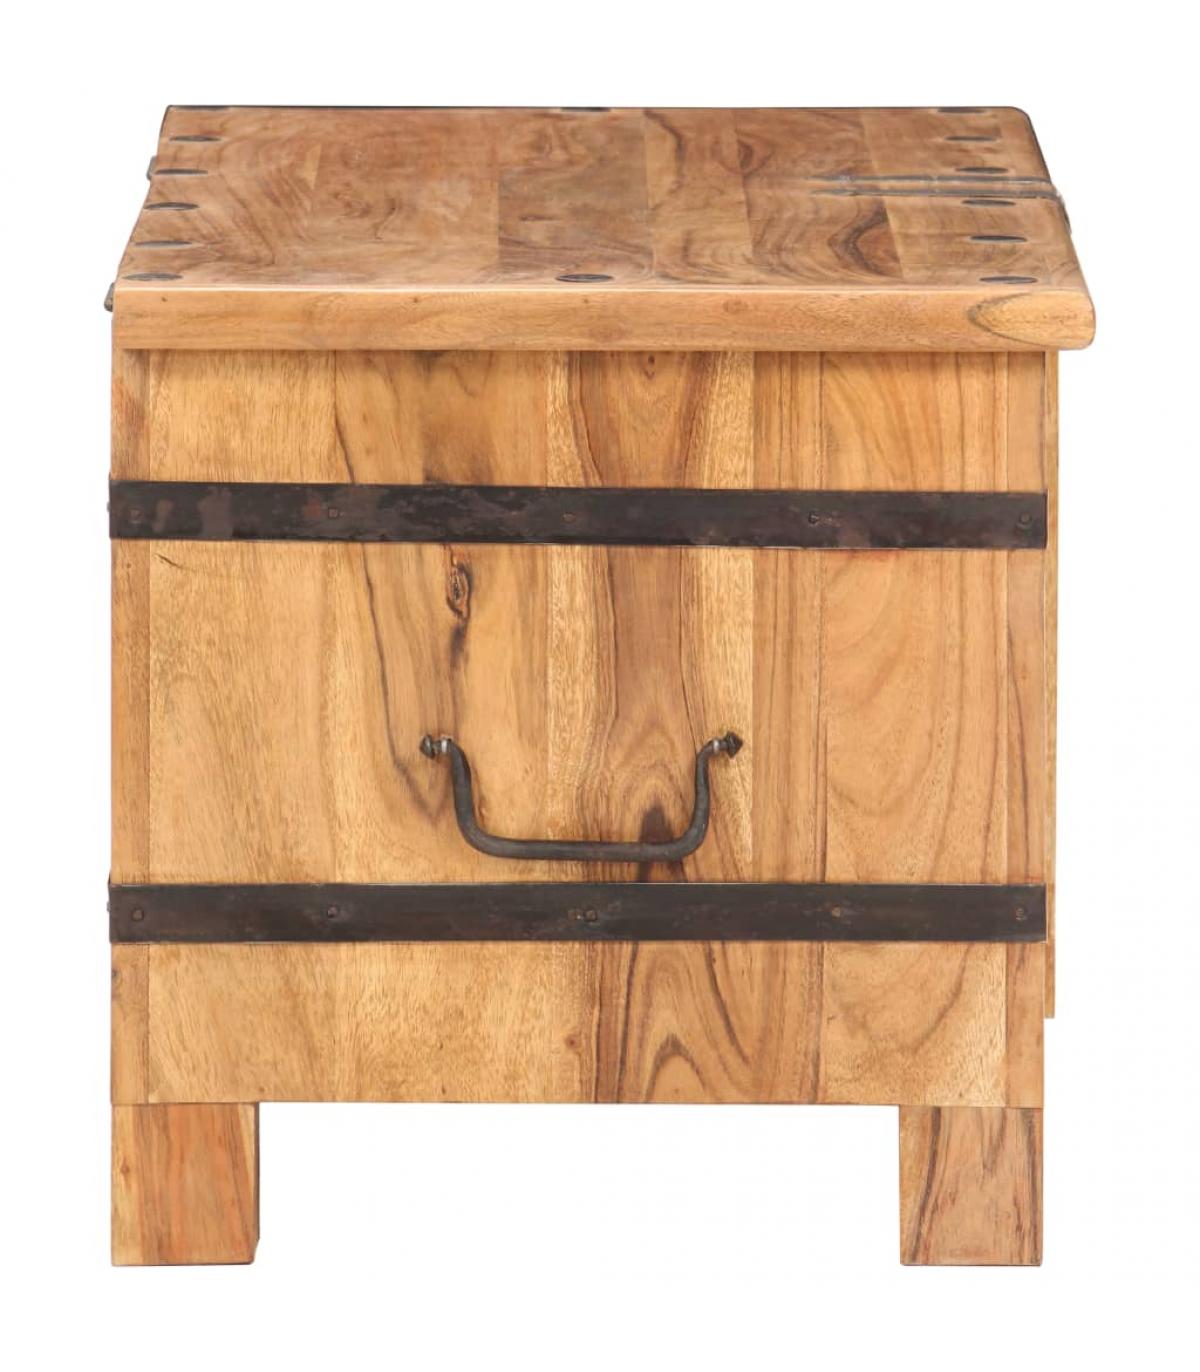 Baúl de almacenamiento de madera de acacia